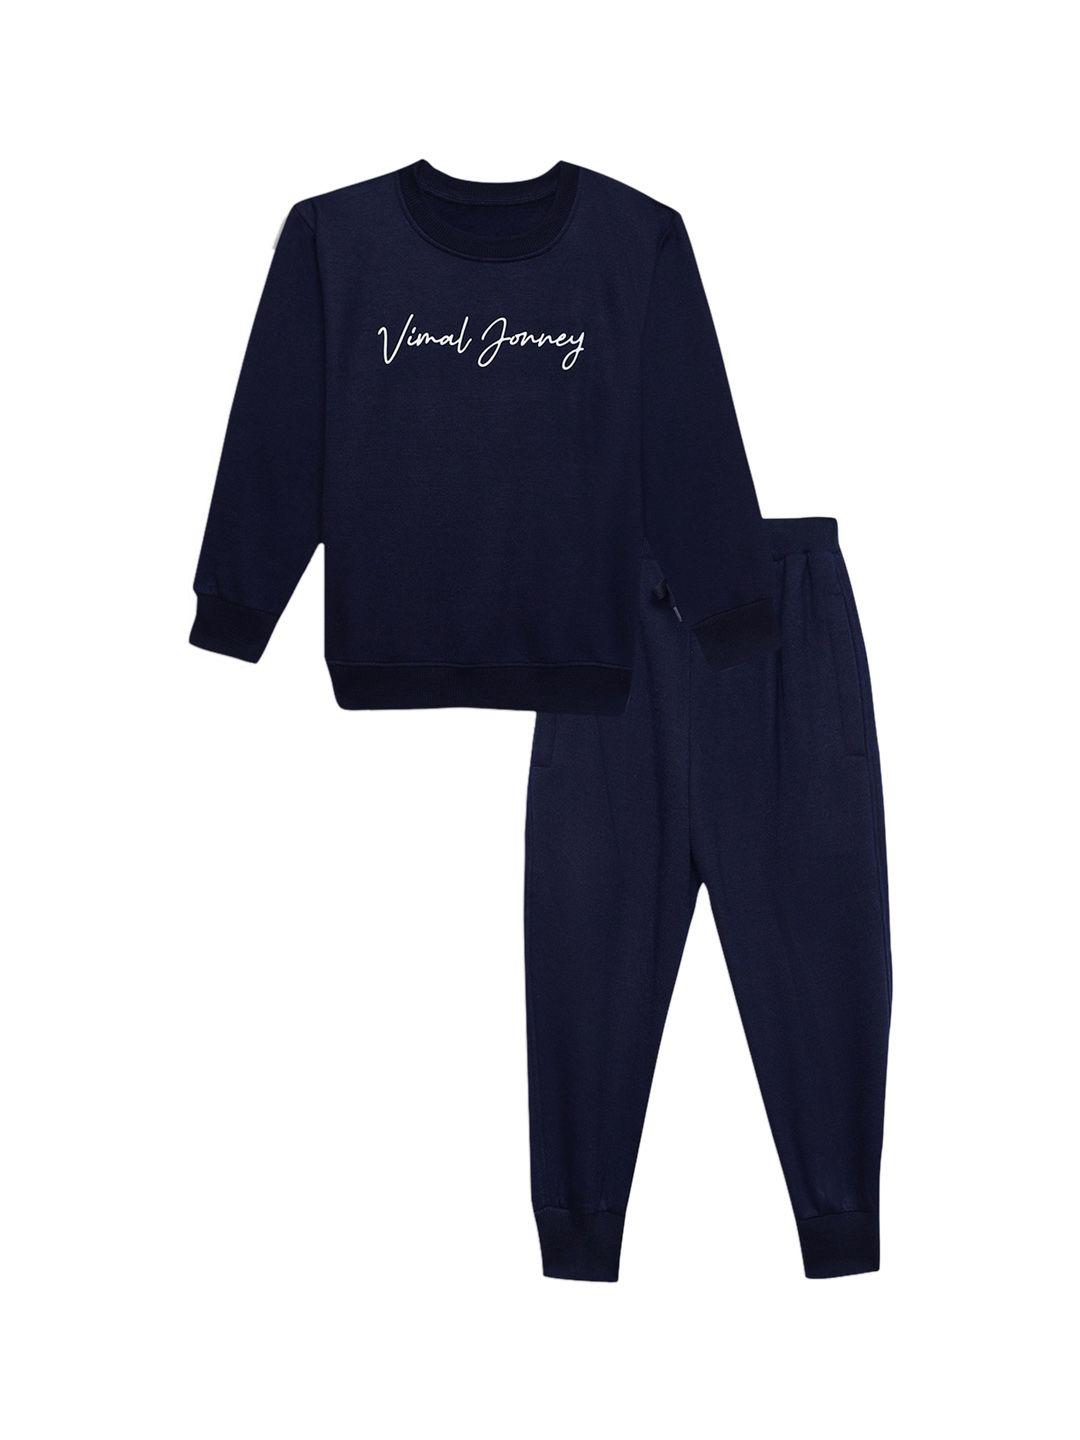 vimal-jonney-printed-clothing-set